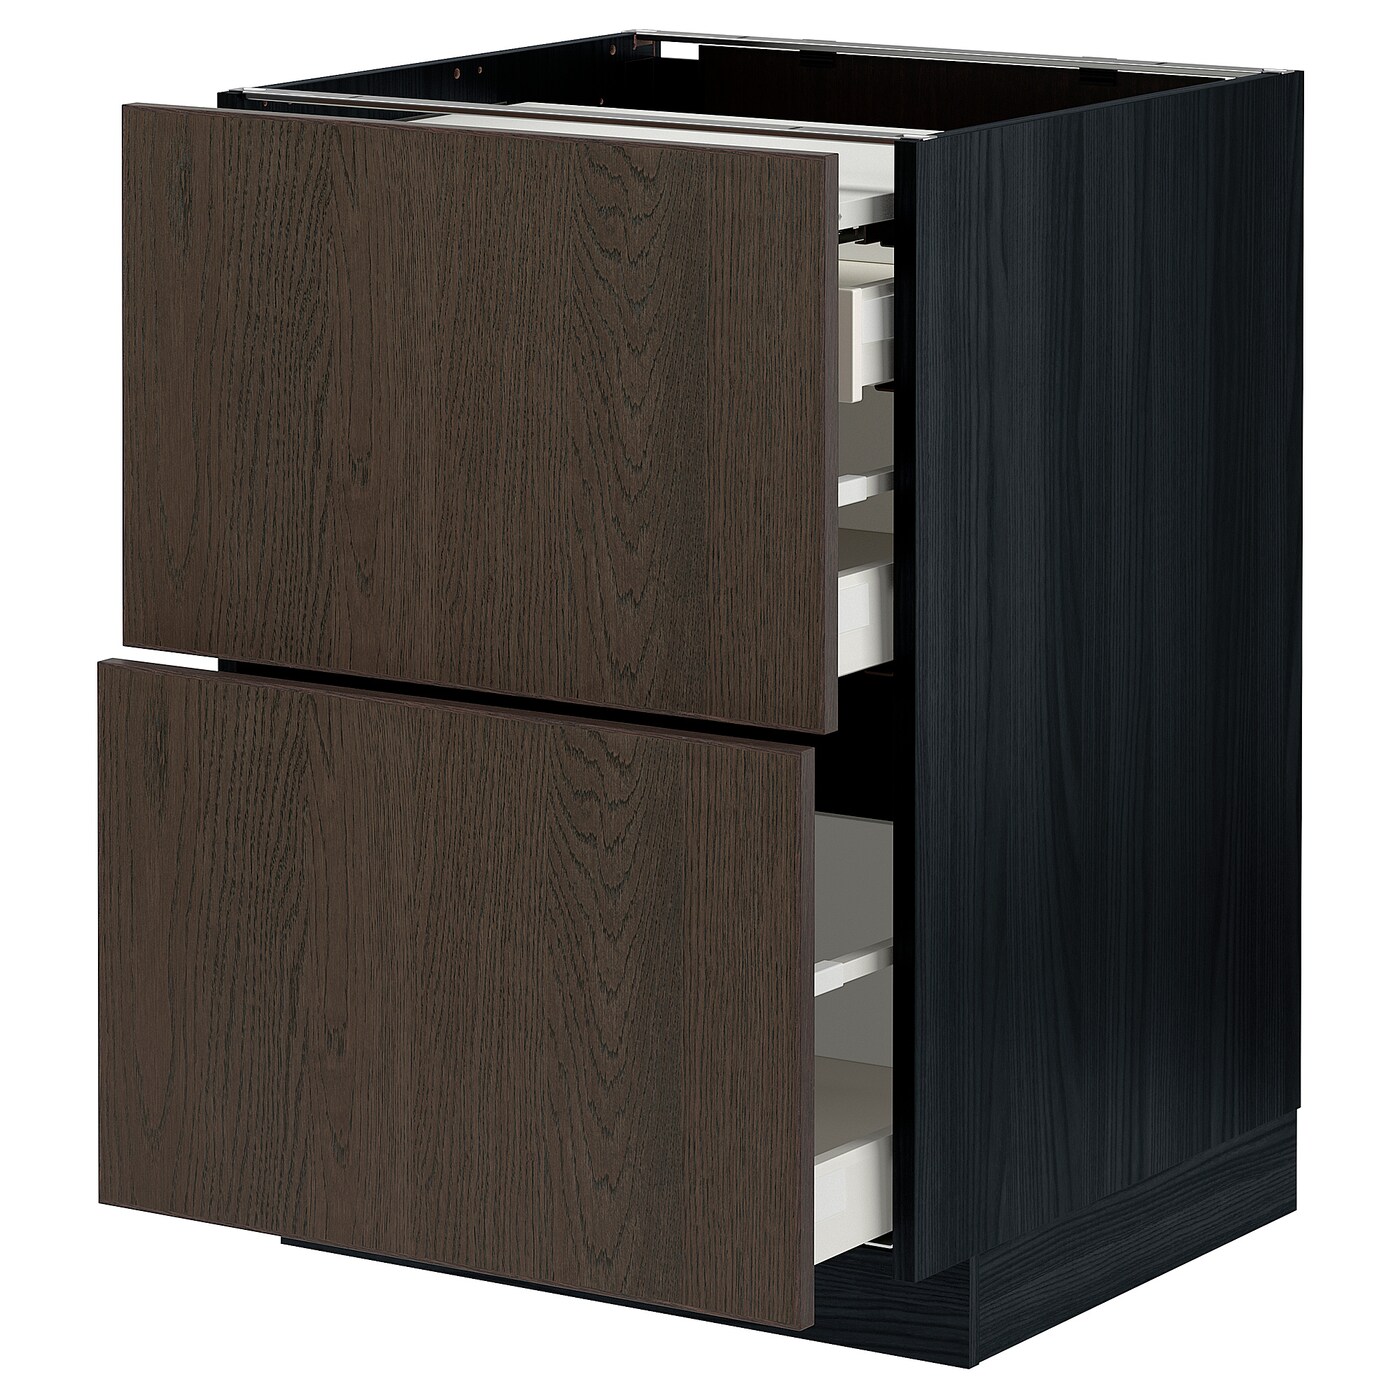 Напольный шкаф - METOD / MAXIMERA IKEA/ МЕТОД/ МАКСИМЕРА ИКЕА,  60х88 см, черный/коричневый